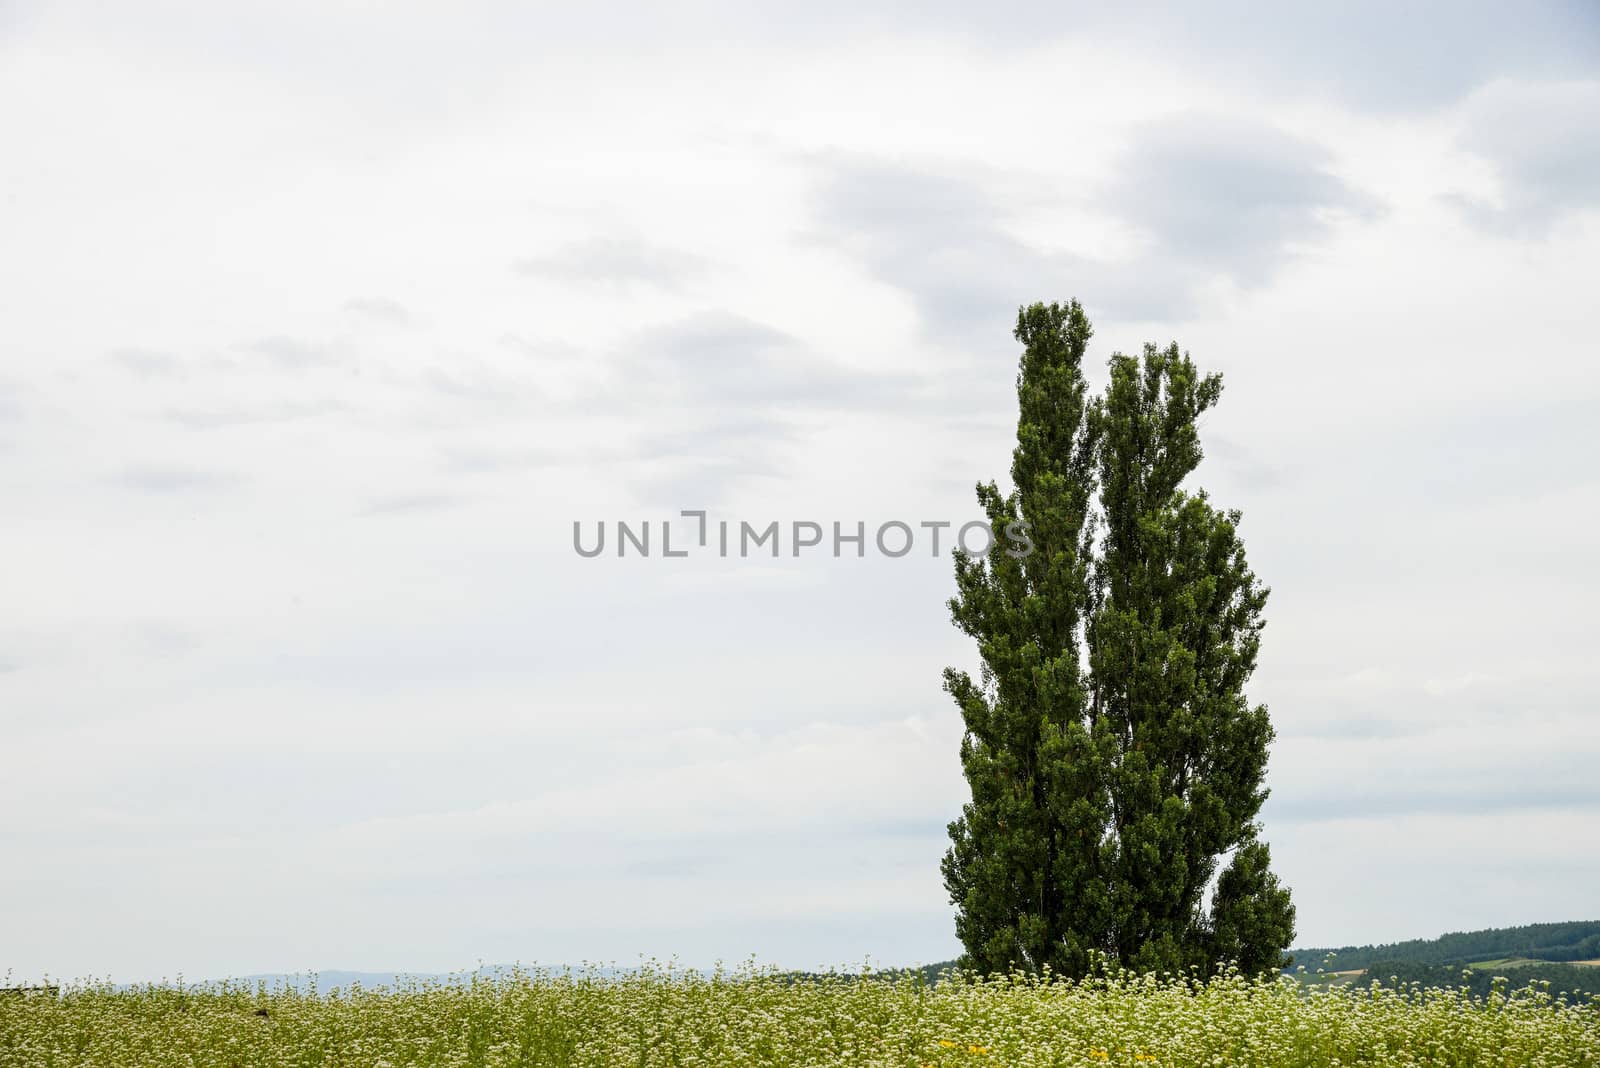 A poplar tree in the field of flower potato3 by gjeerawut